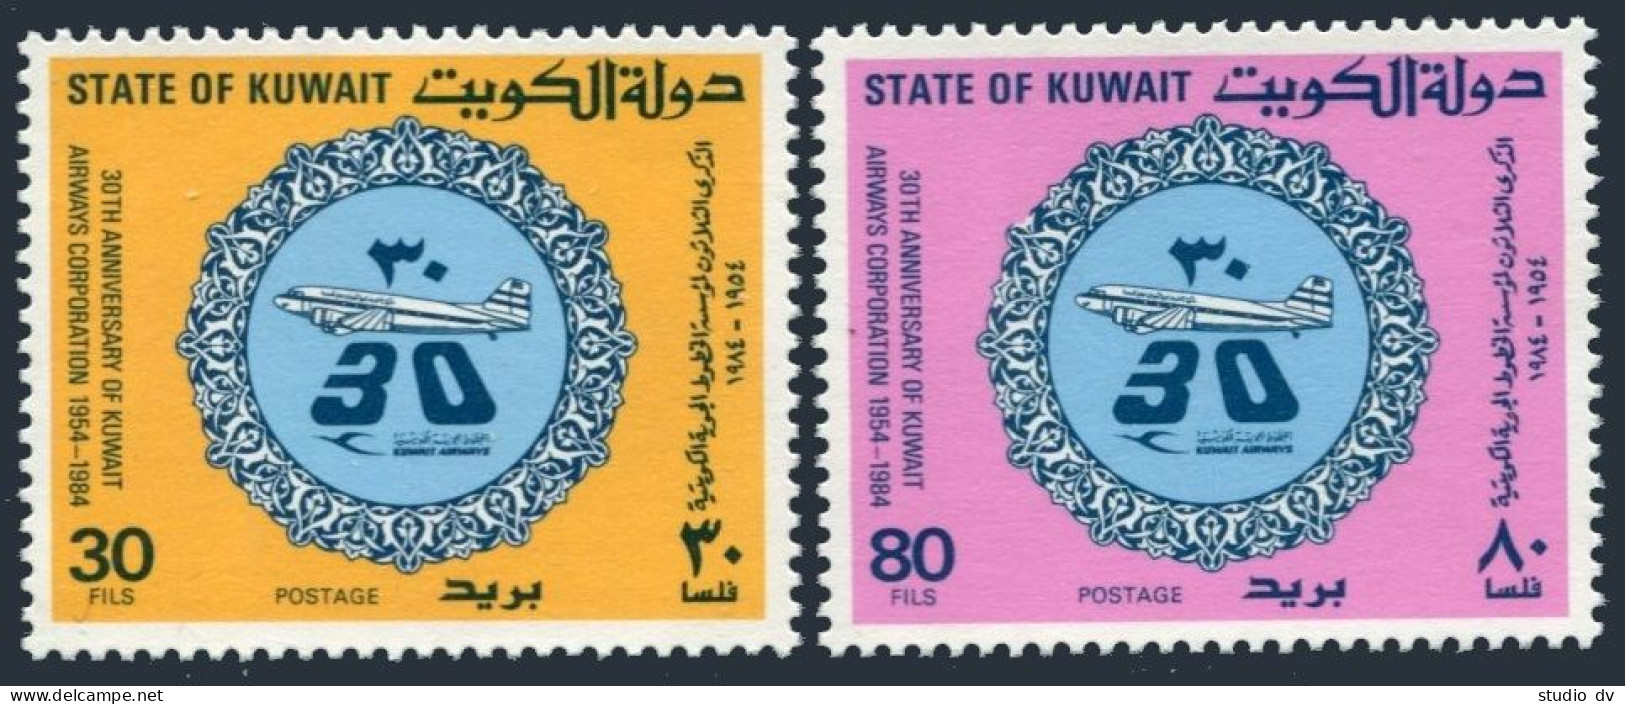 Kuwait 946-947, MNH. Michel 1032-1033. Kuwait Airways Corp-30, 1984. Planes. - Koweït